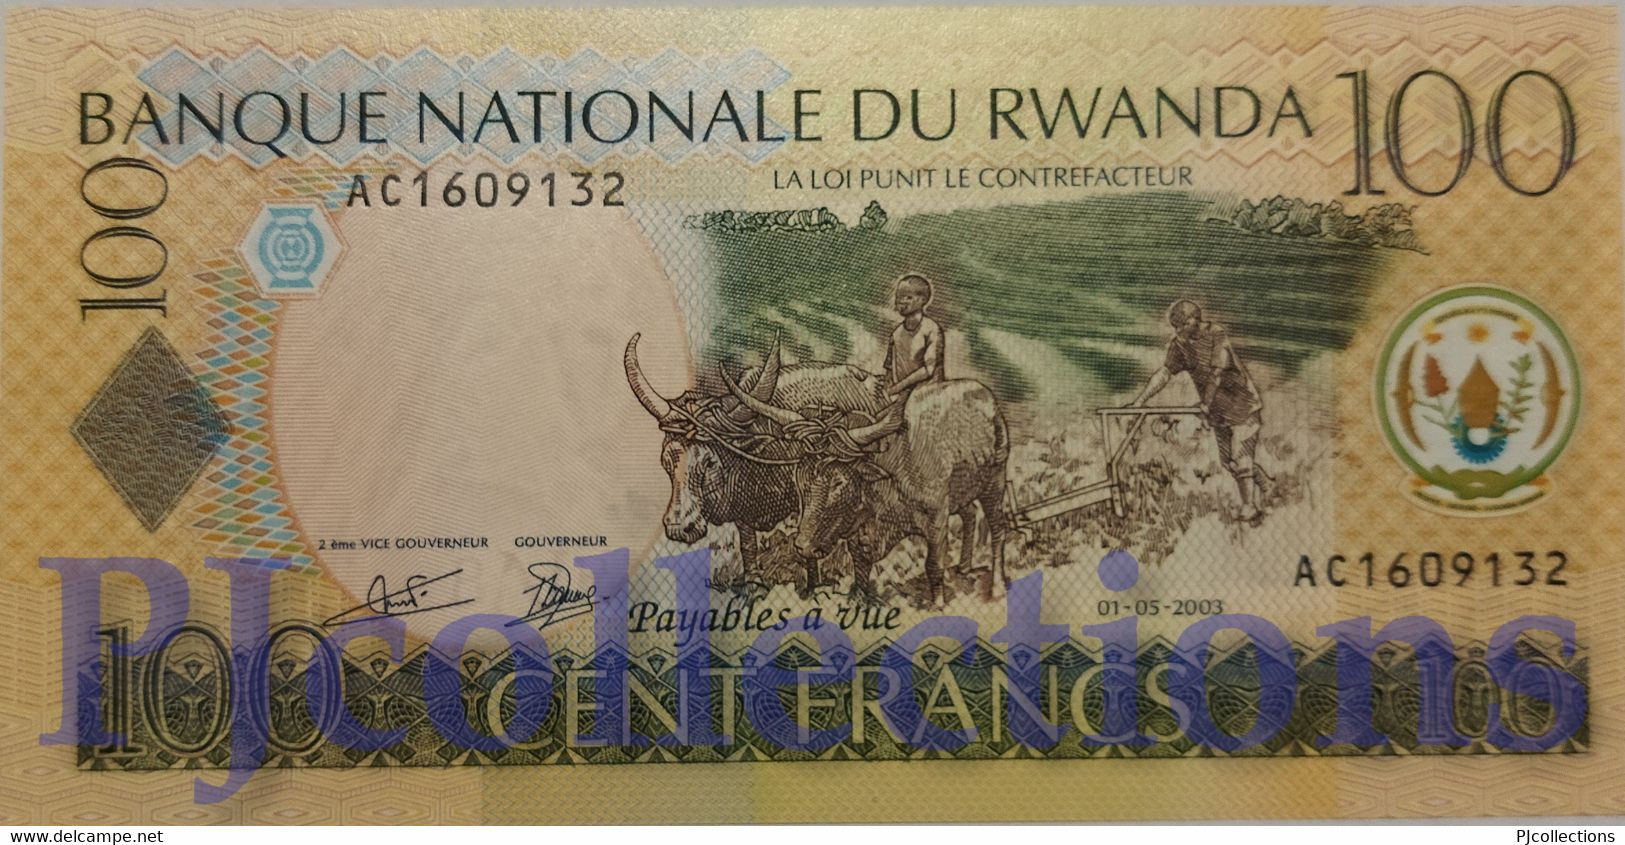 LOT RWANDA 100 FRANCS 2003 PICK 29a UNC PREFIX "AA" X 5 PCS - Rwanda